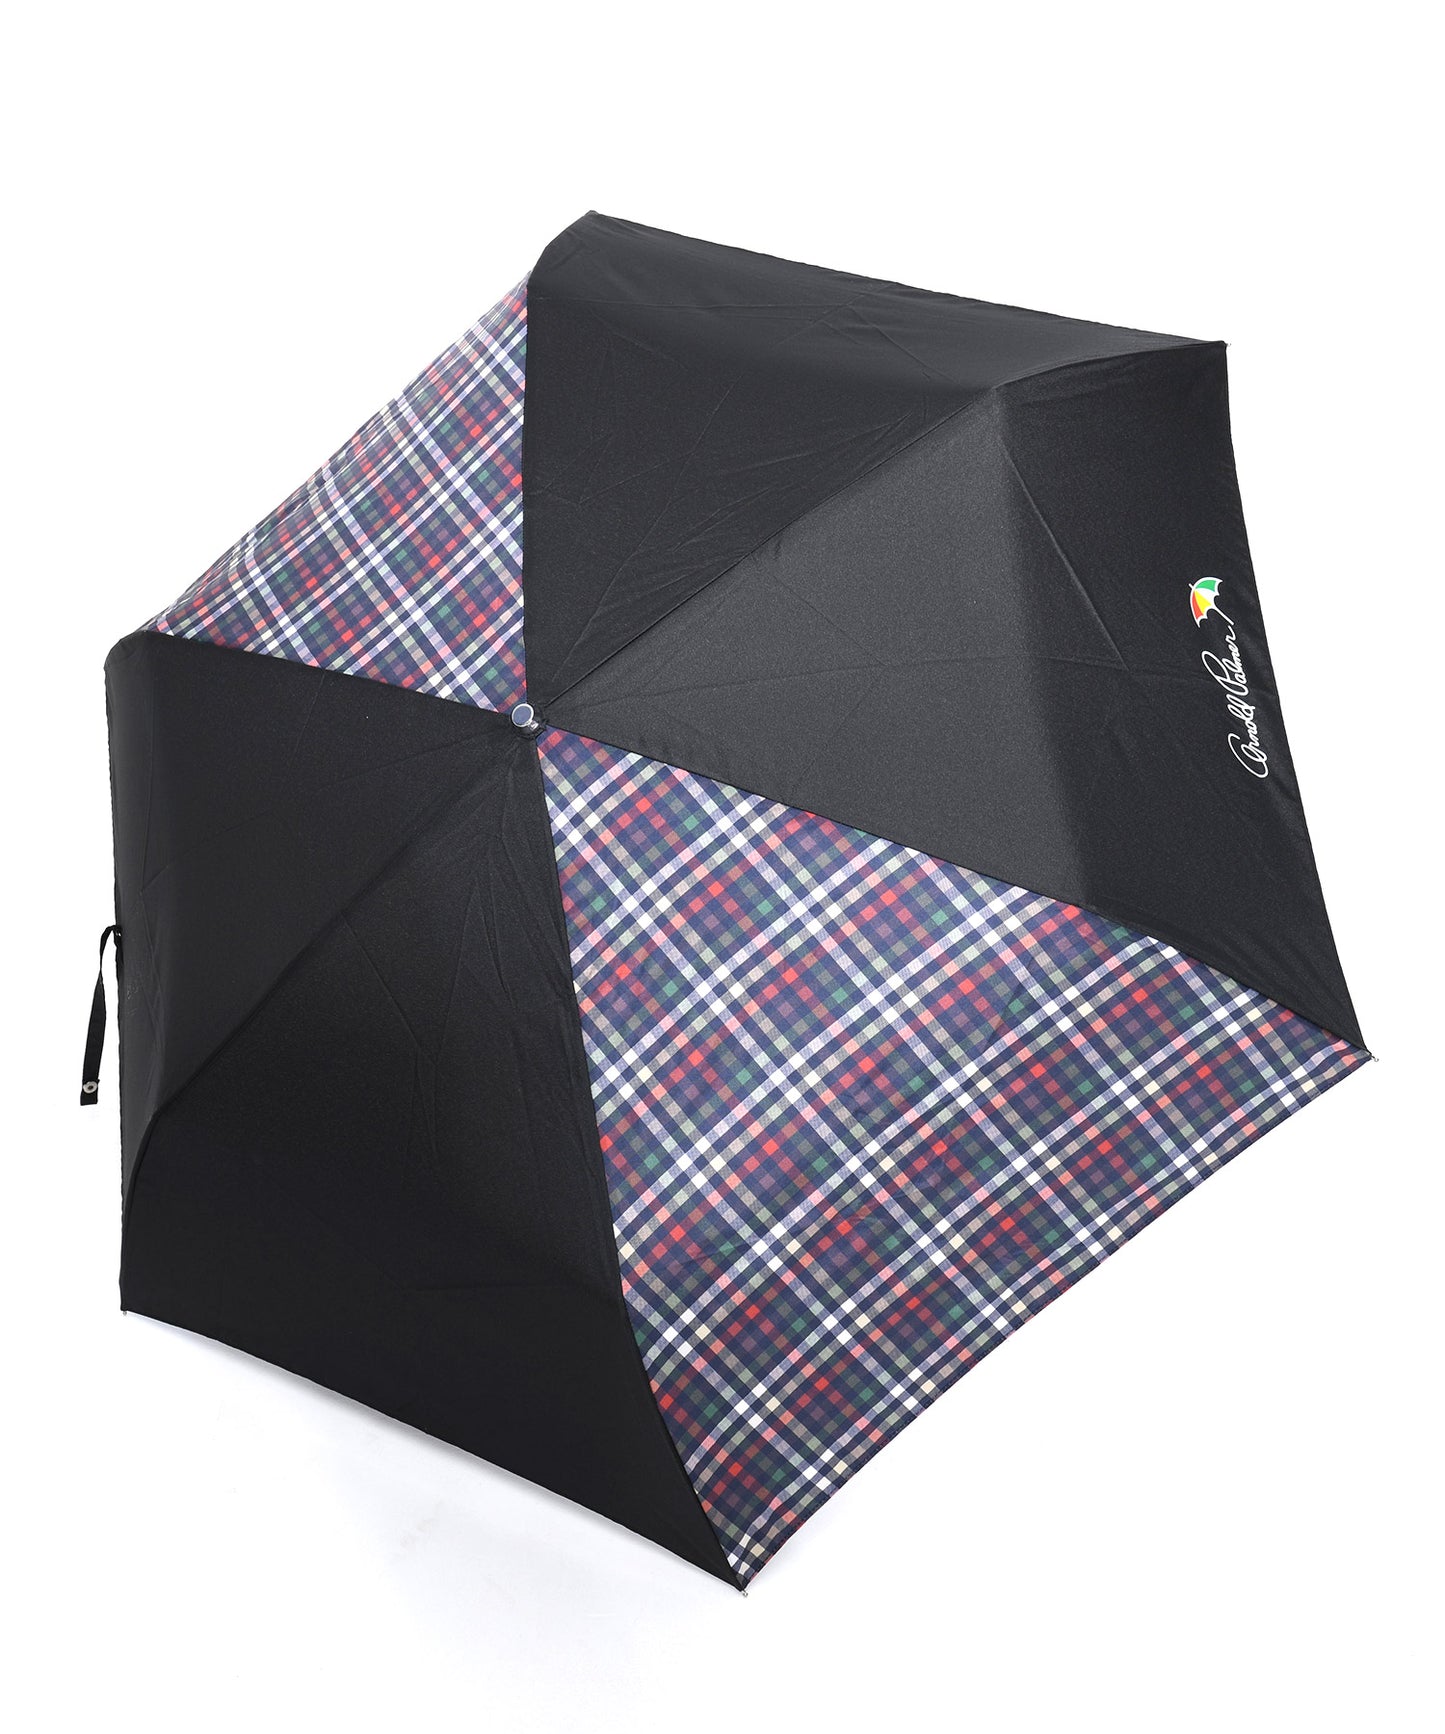 パネルパーマーチェック晴雨兼用 シェア折り畳み傘